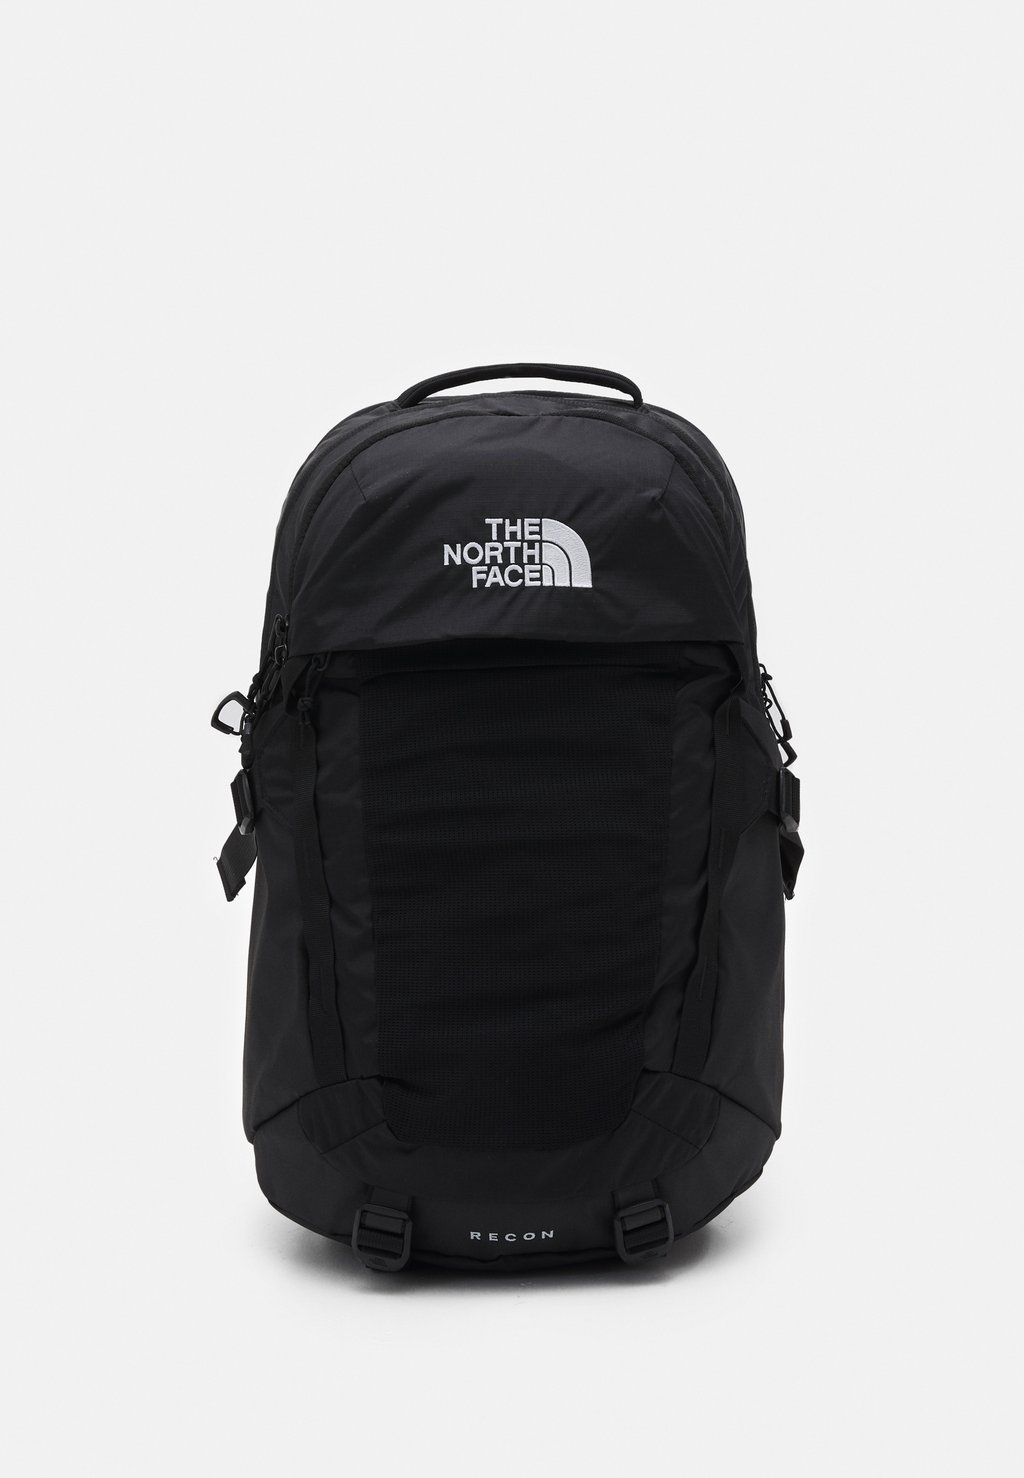 Рюкзак для путешествий The North Face Recon Unisex, чёрный рюкзак the north face bozer backpack черный